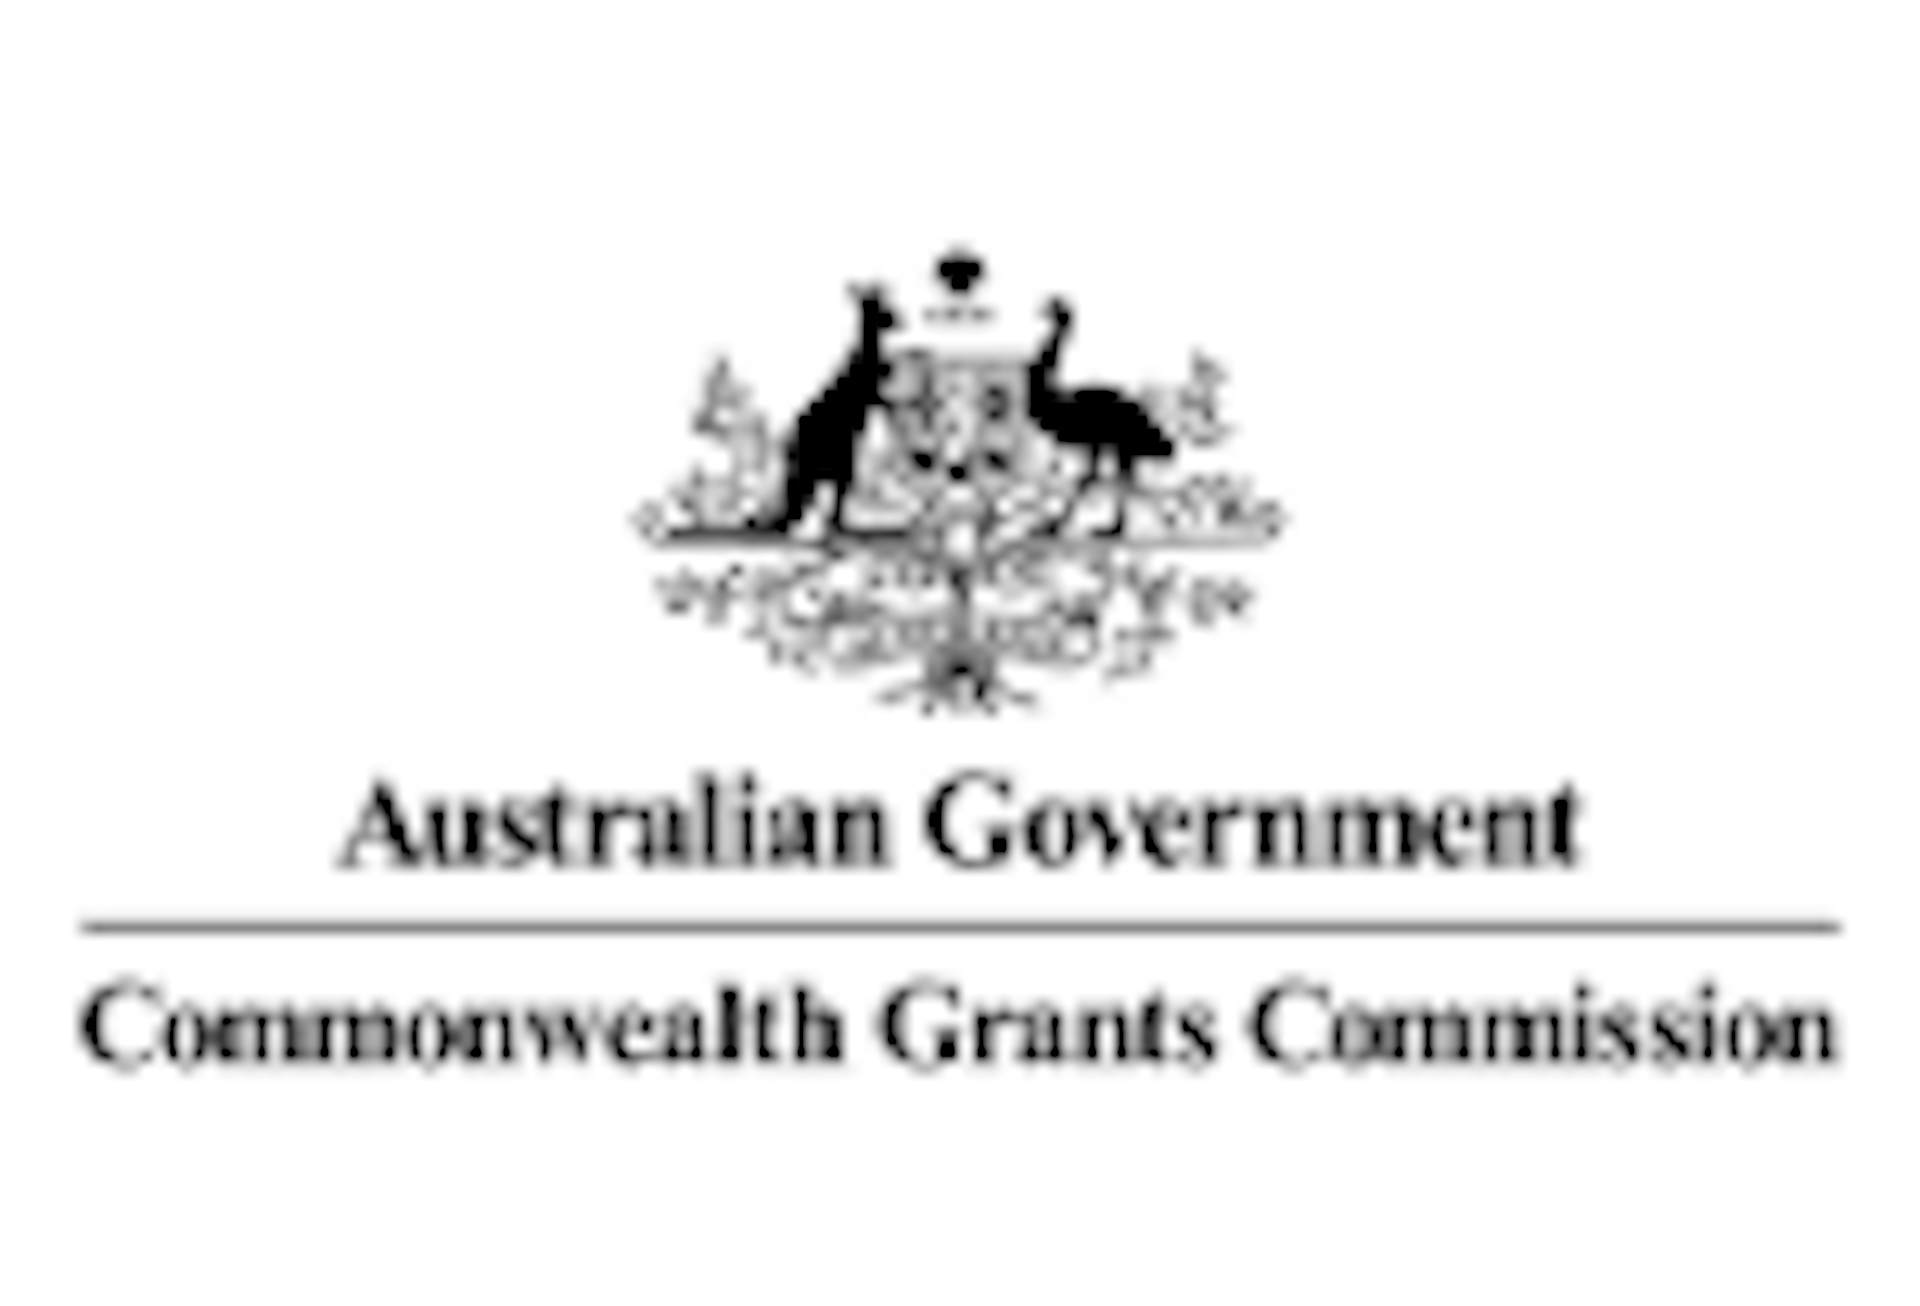 Australian-goverment-dept-of-commonwealth-grants